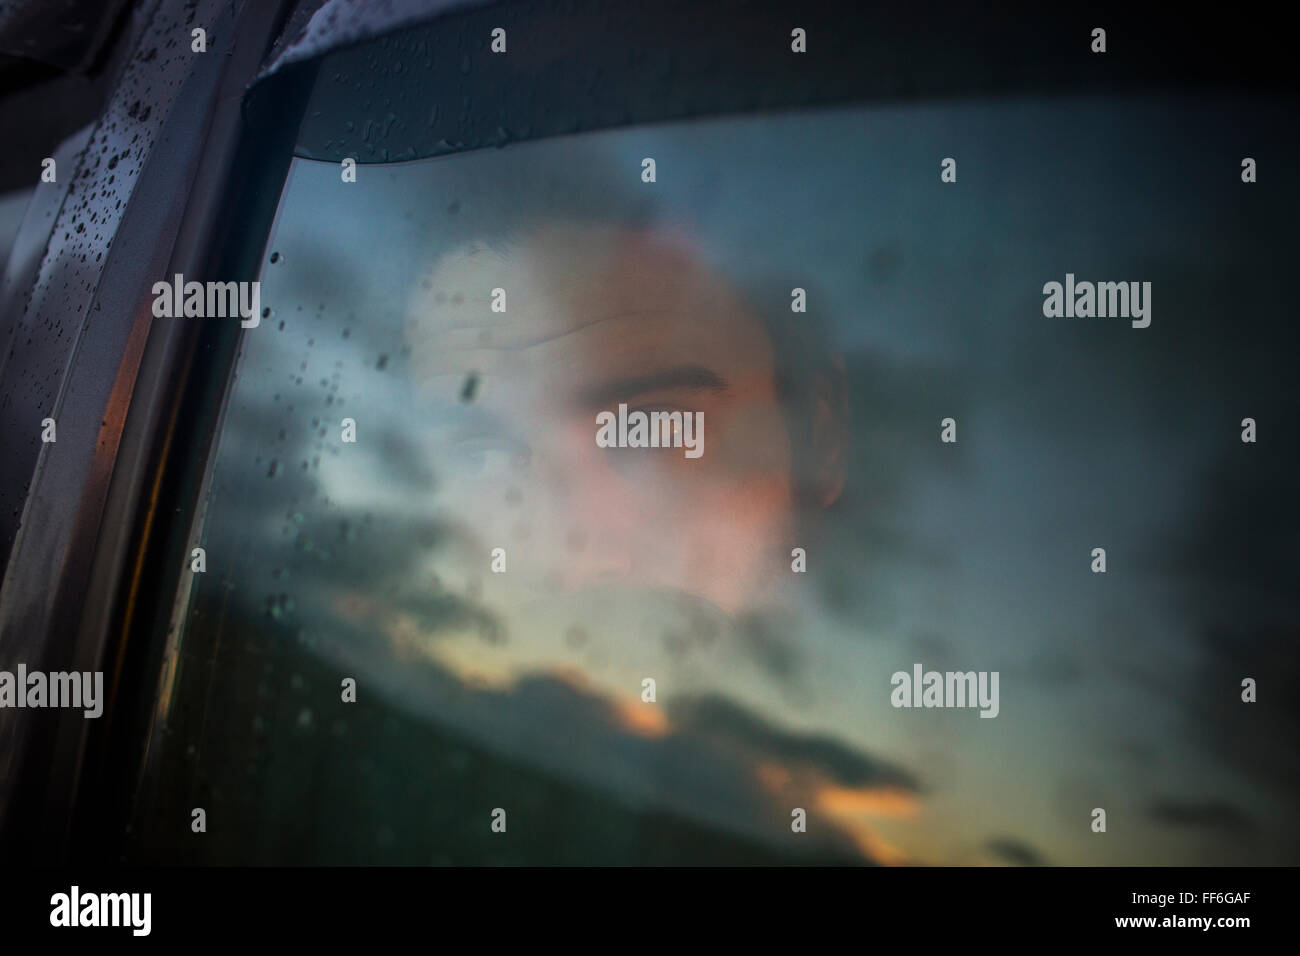 Ein Mann sitzt in einem Auto auf der Suche. Reflexionen auf den Sonnenuntergang Himmel auf das Fenster. Stockfoto